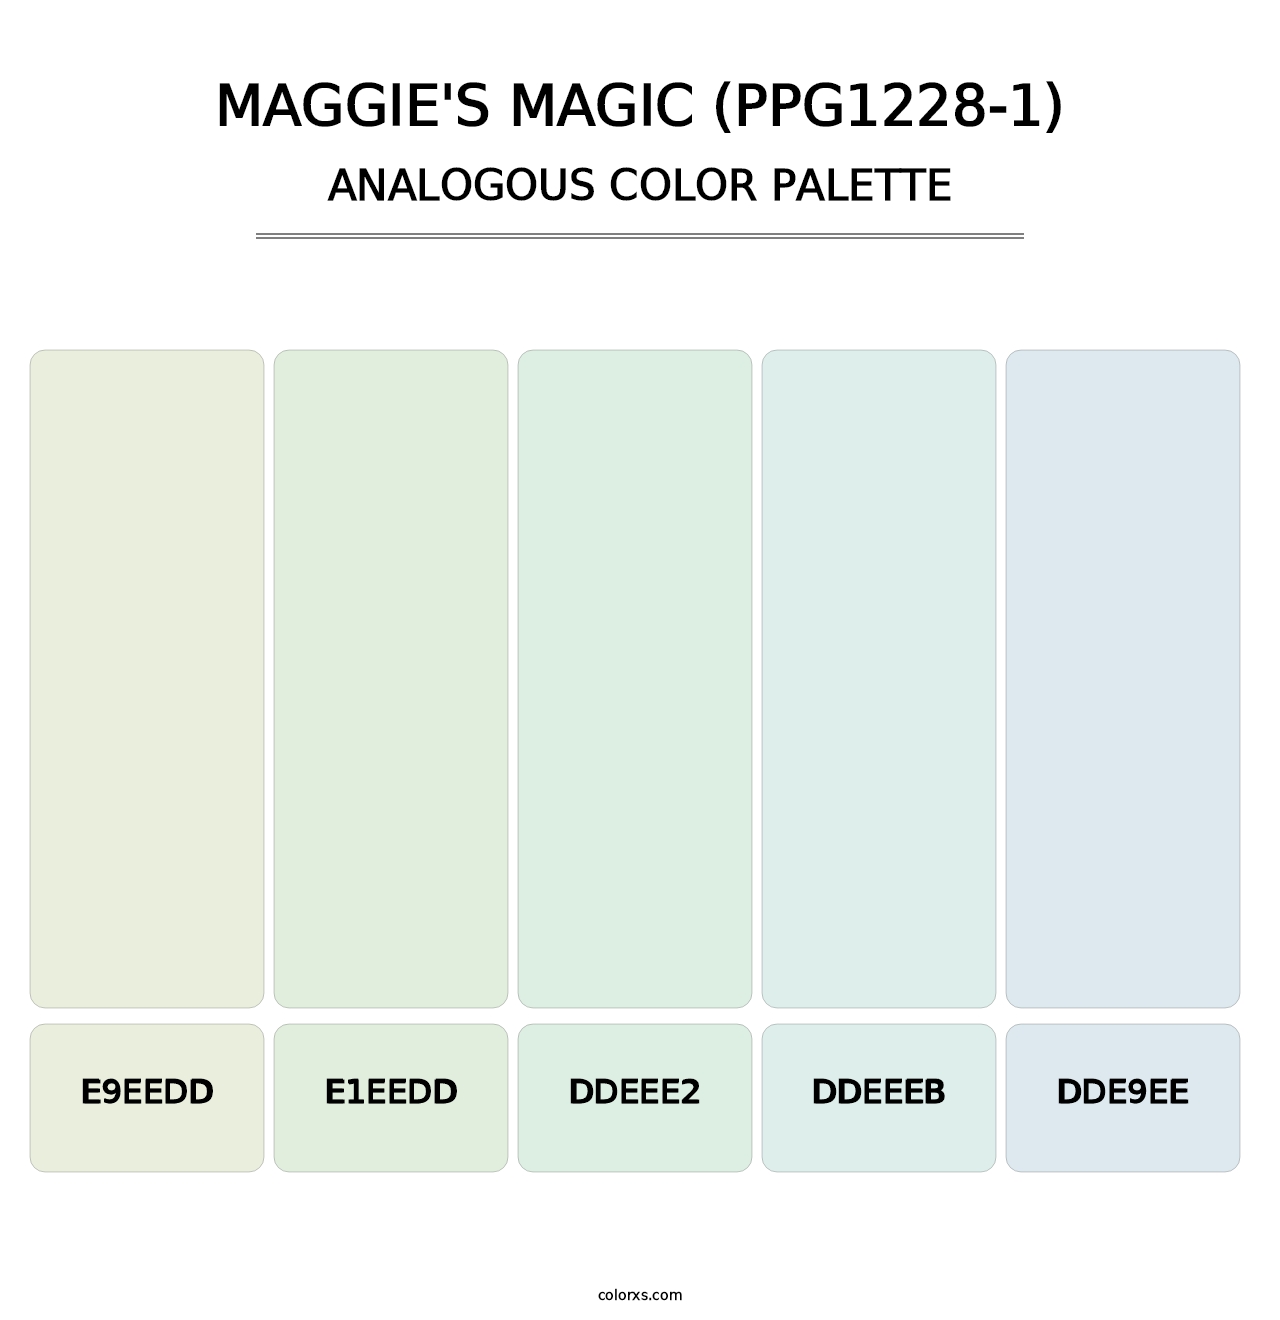 Maggie's Magic (PPG1228-1) - Analogous Color Palette